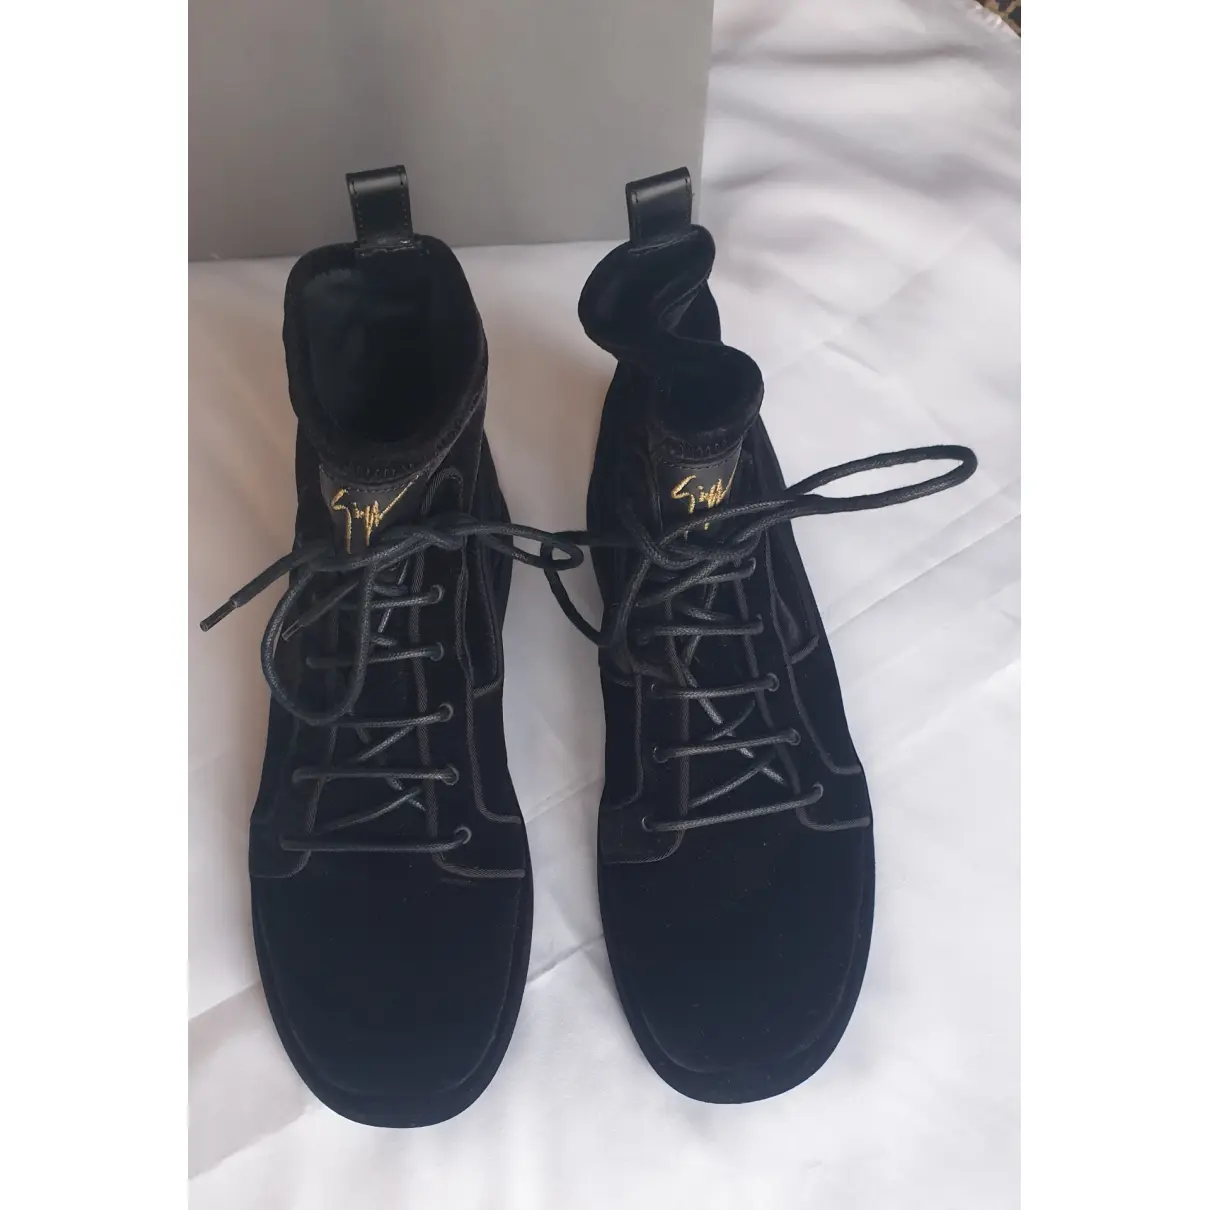 Buy Giuseppe Zanotti Velvet boots online